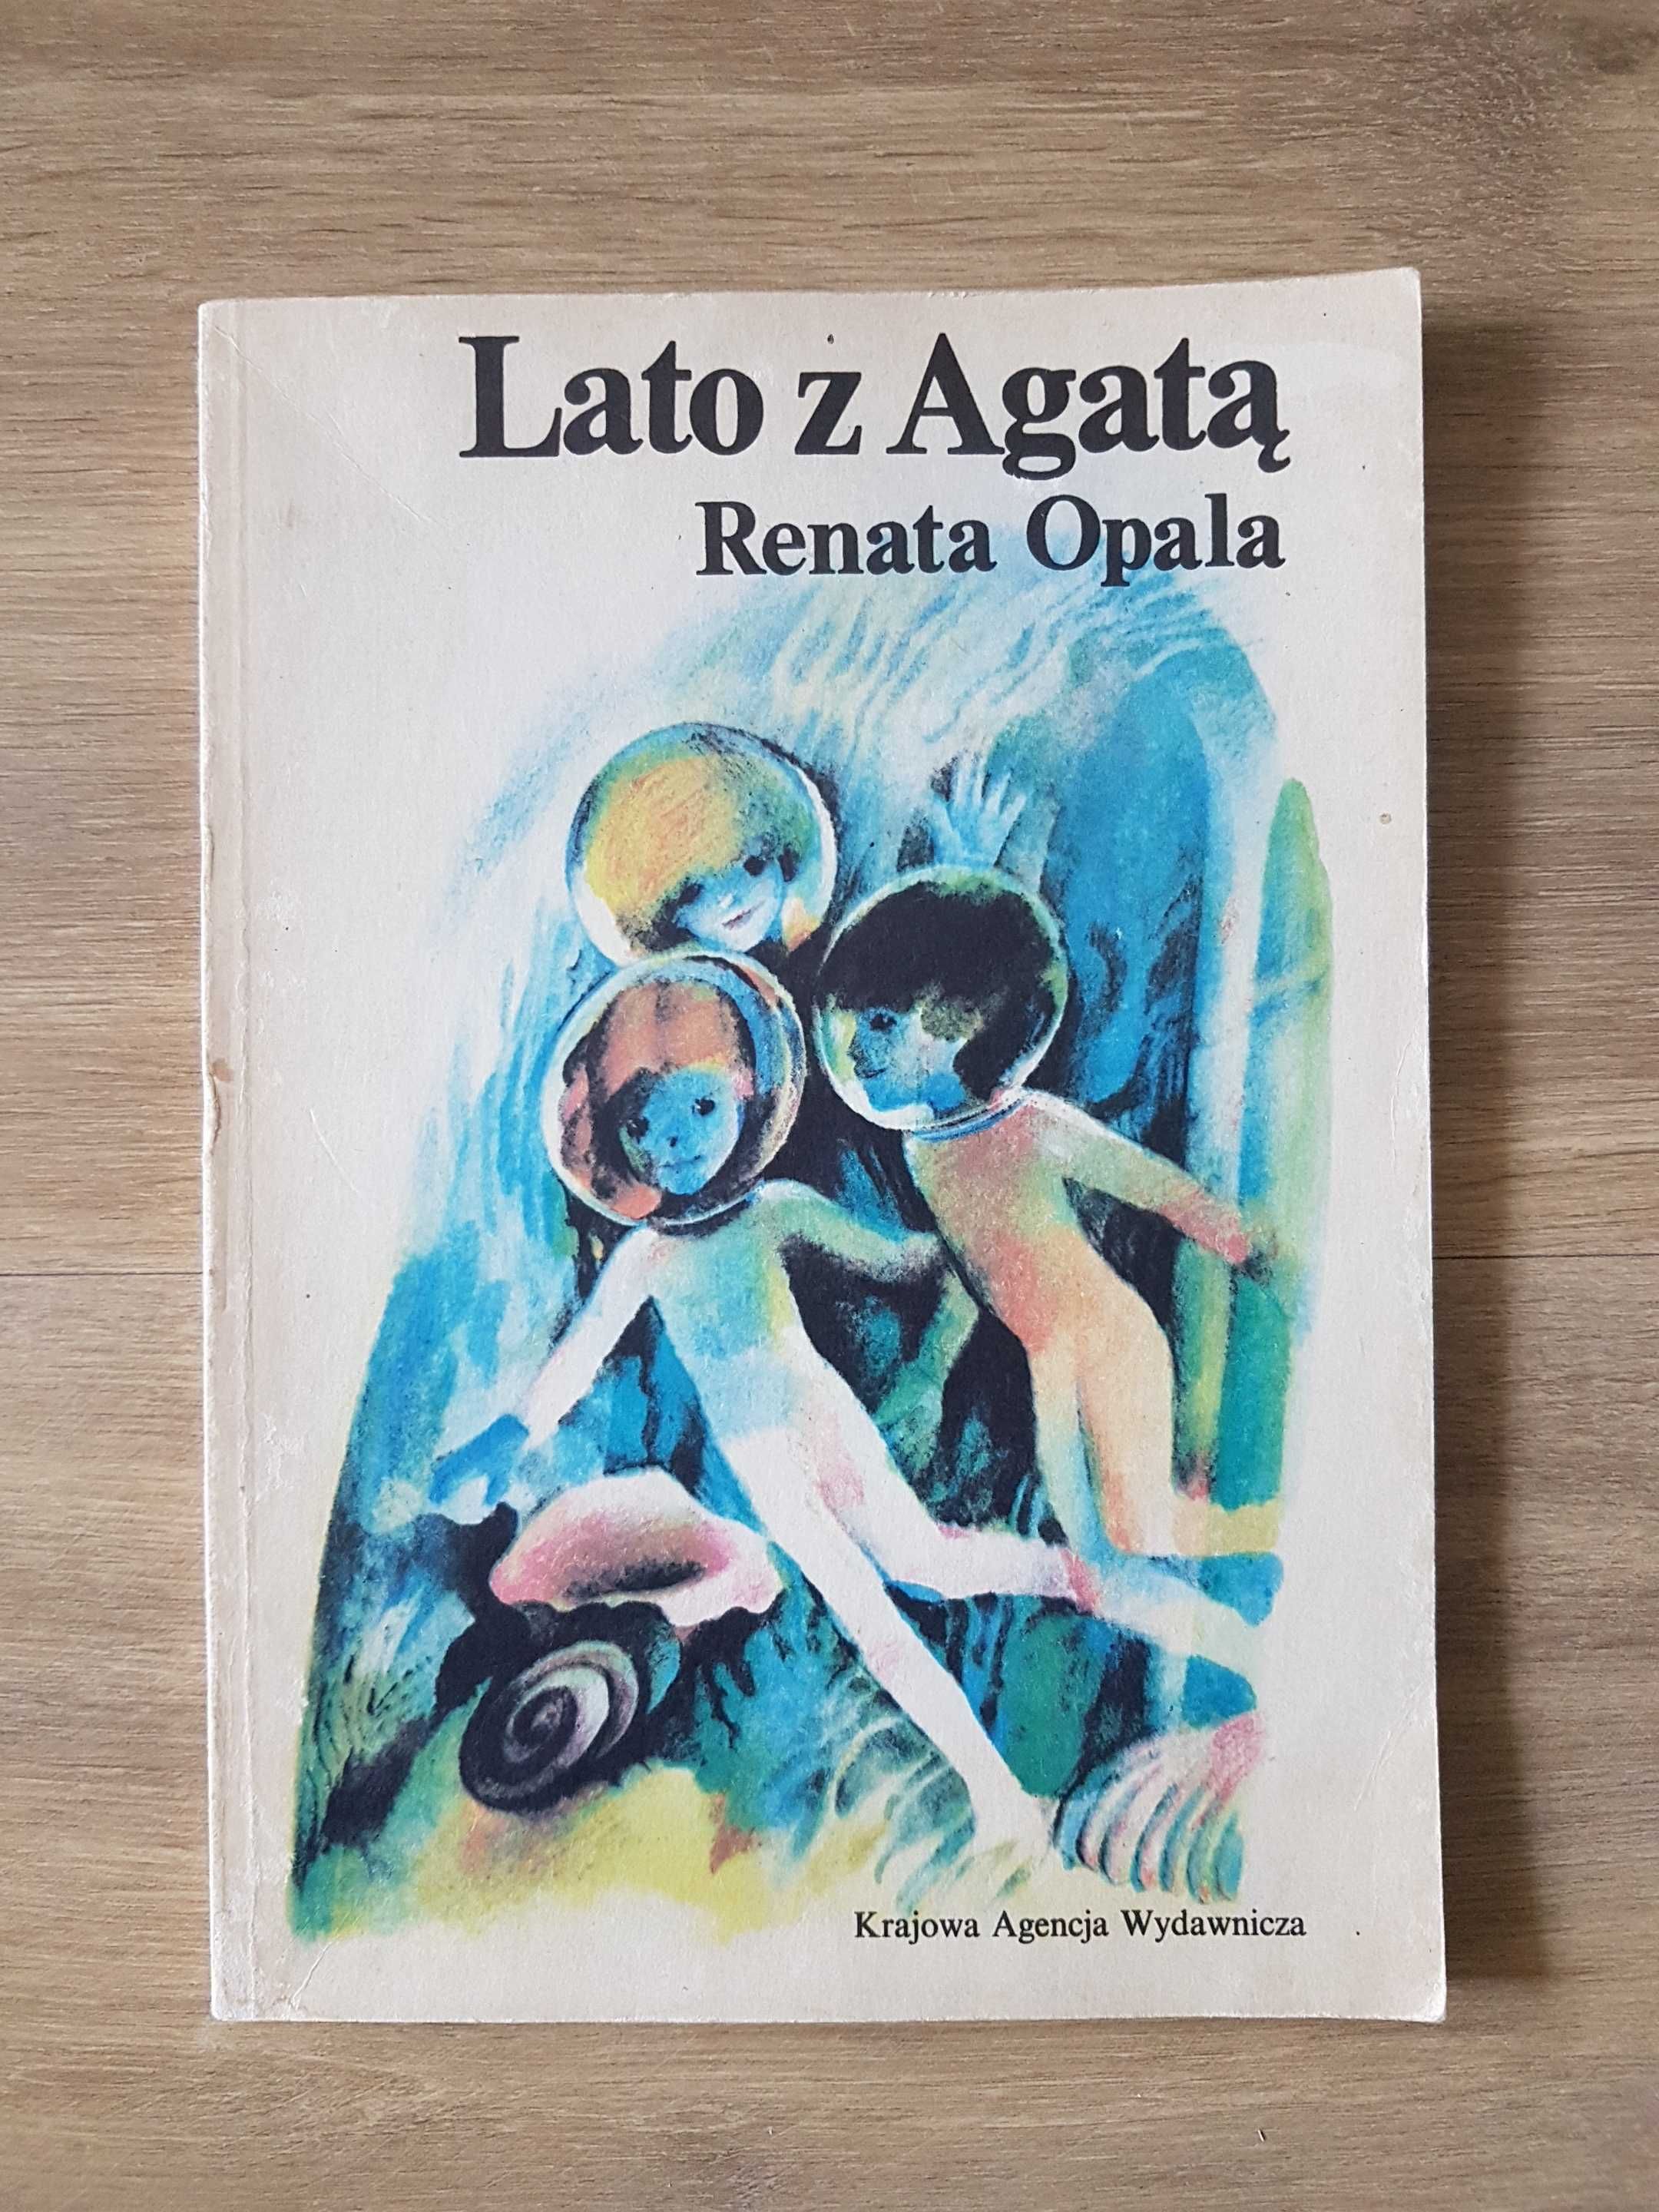 Lato z Agatą Renata Opala Krajowa Agencja Wydawnicza 1989 rok